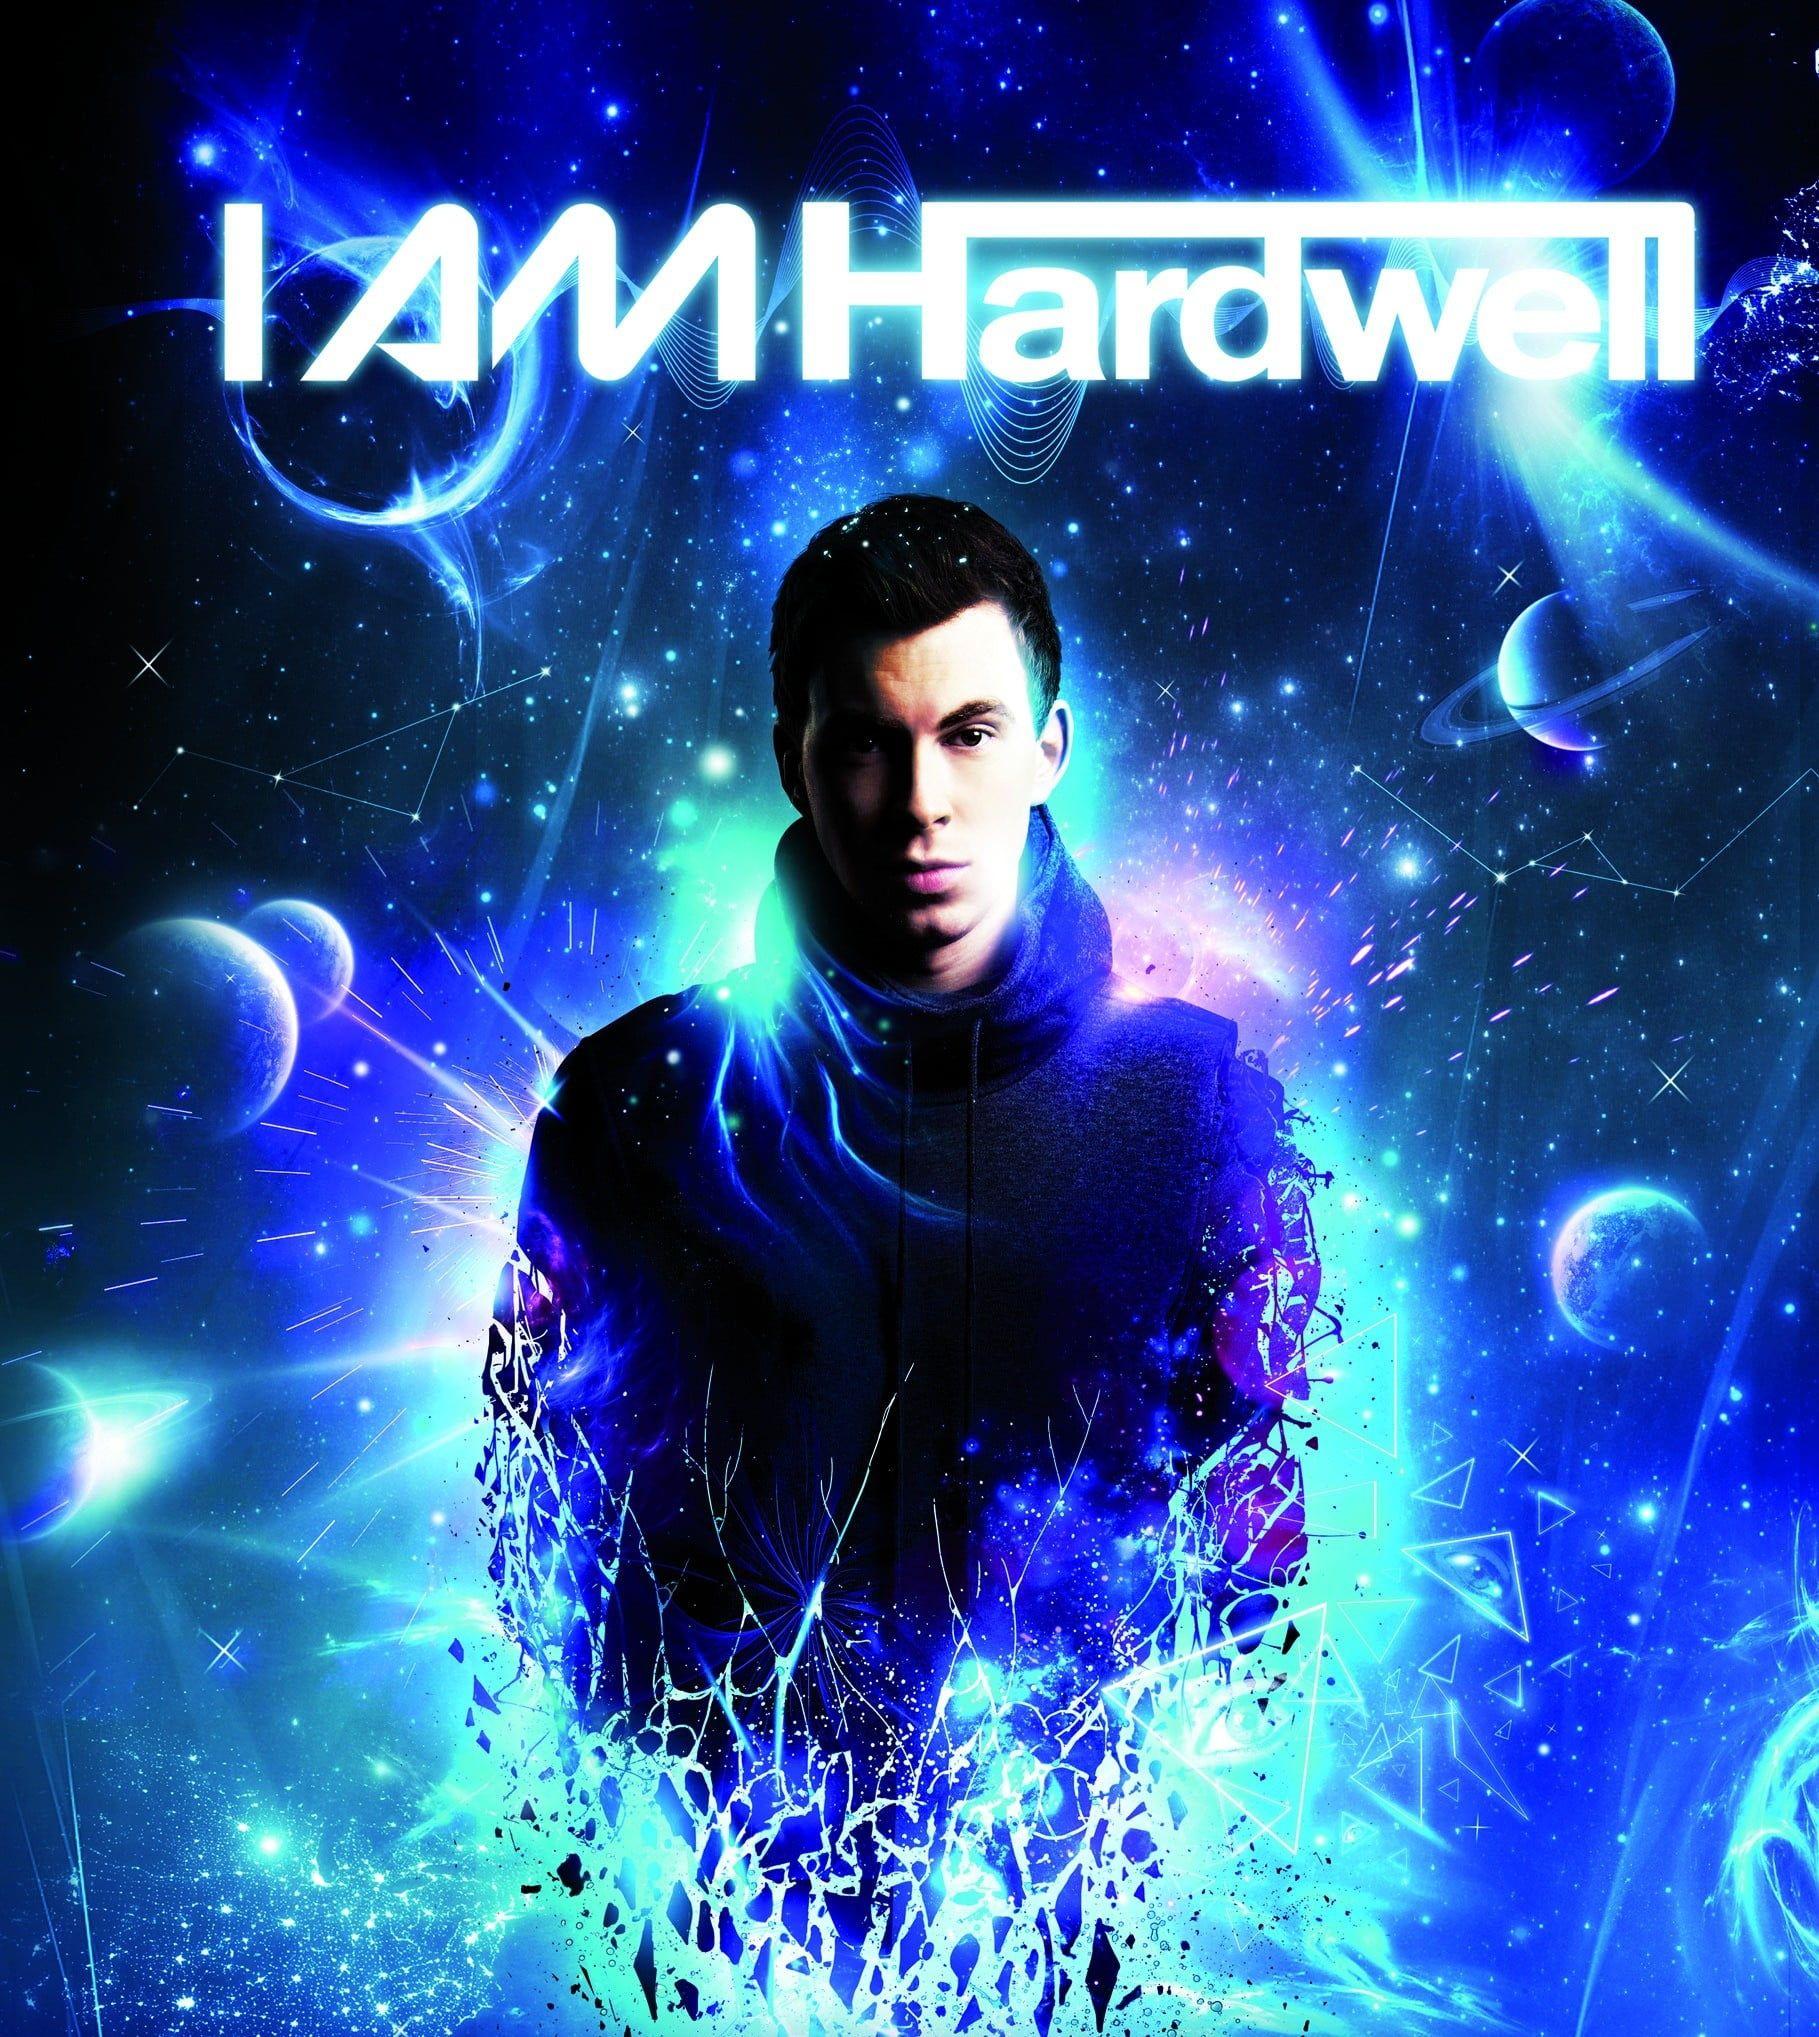 I Am Hardwell wallpaper, Hardwell, I AM Hardwell, music, DJ HD